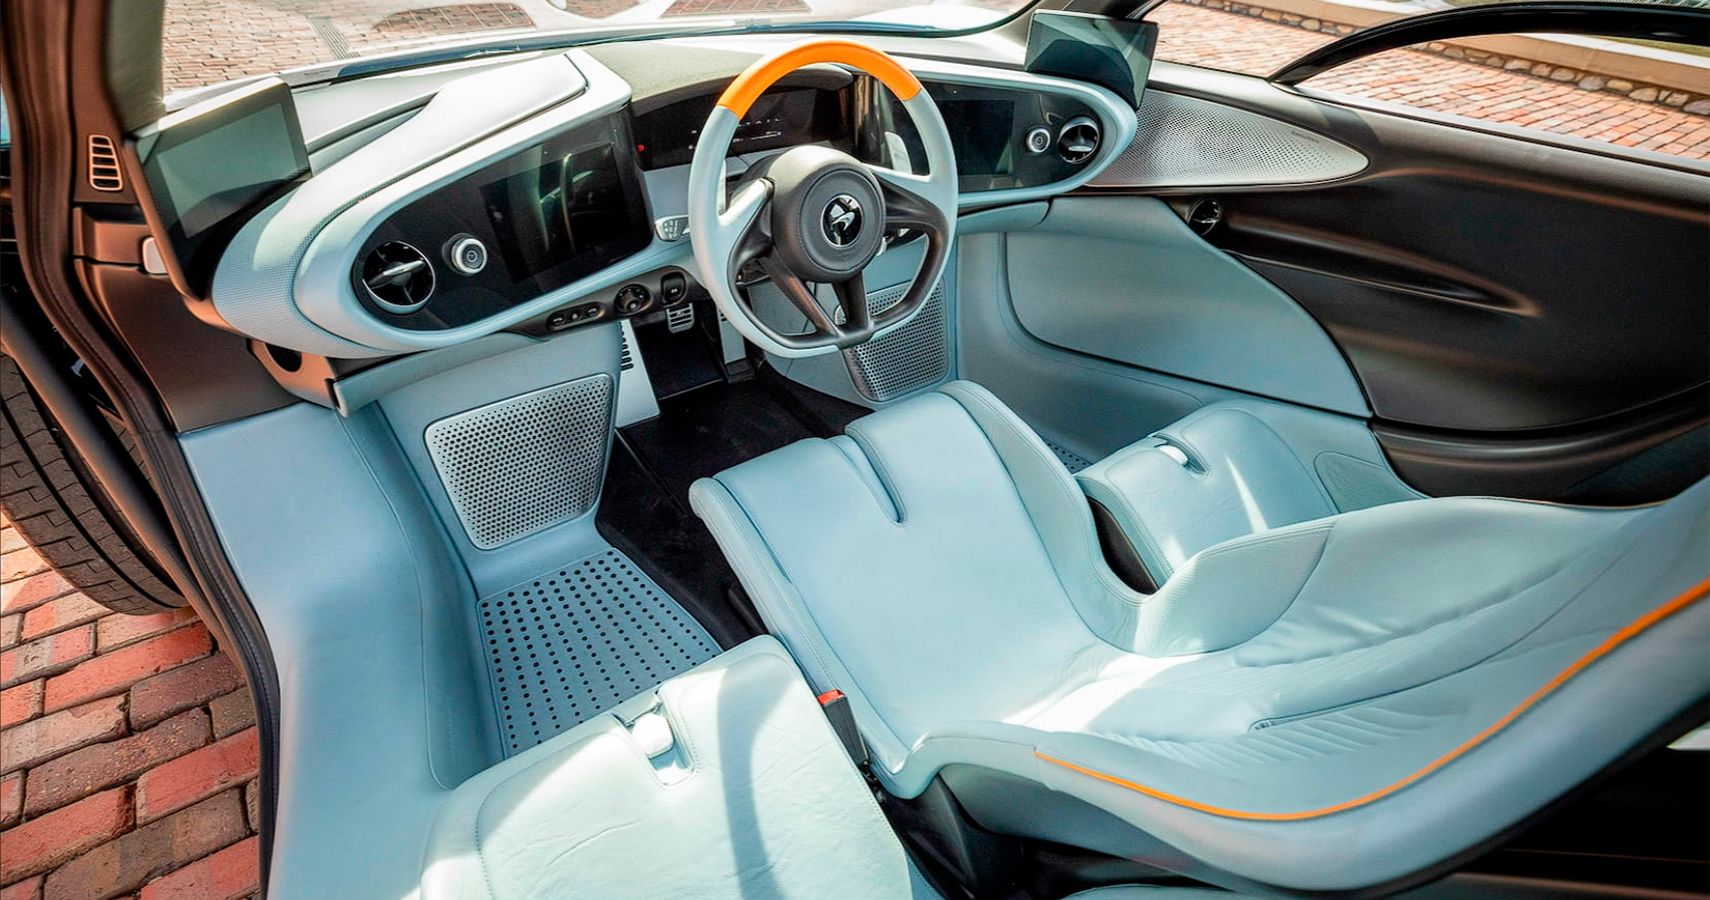 2020 McLaren Speedtail metallic blue silver interior